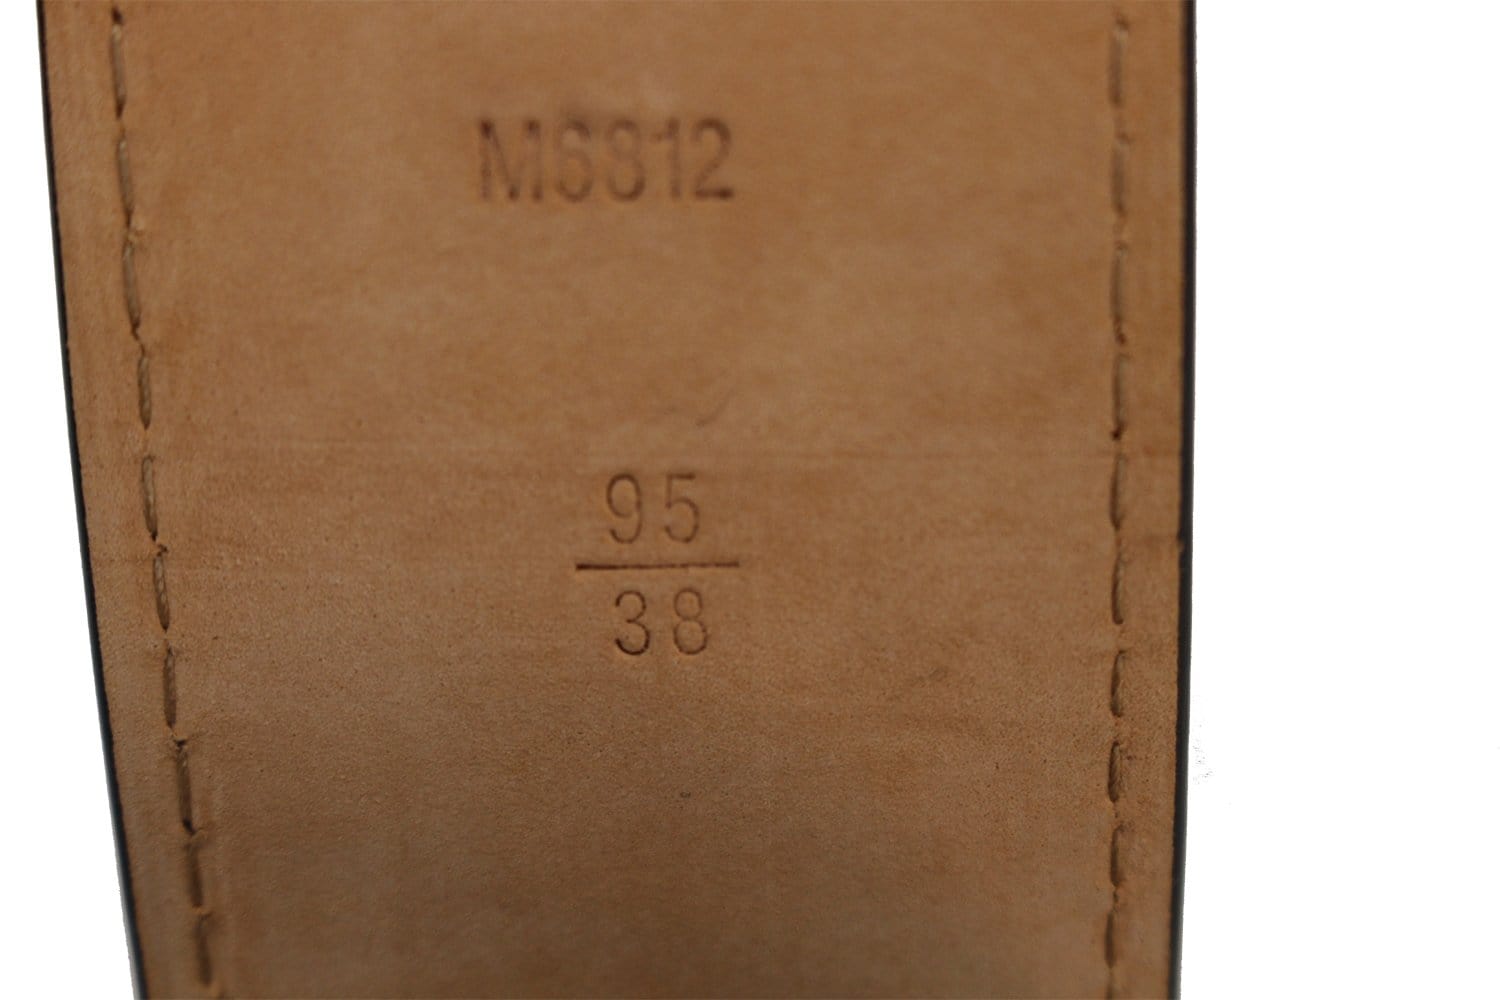 Sold at Auction: Louis Vuitton Ceinture Jeans Belt; M6812